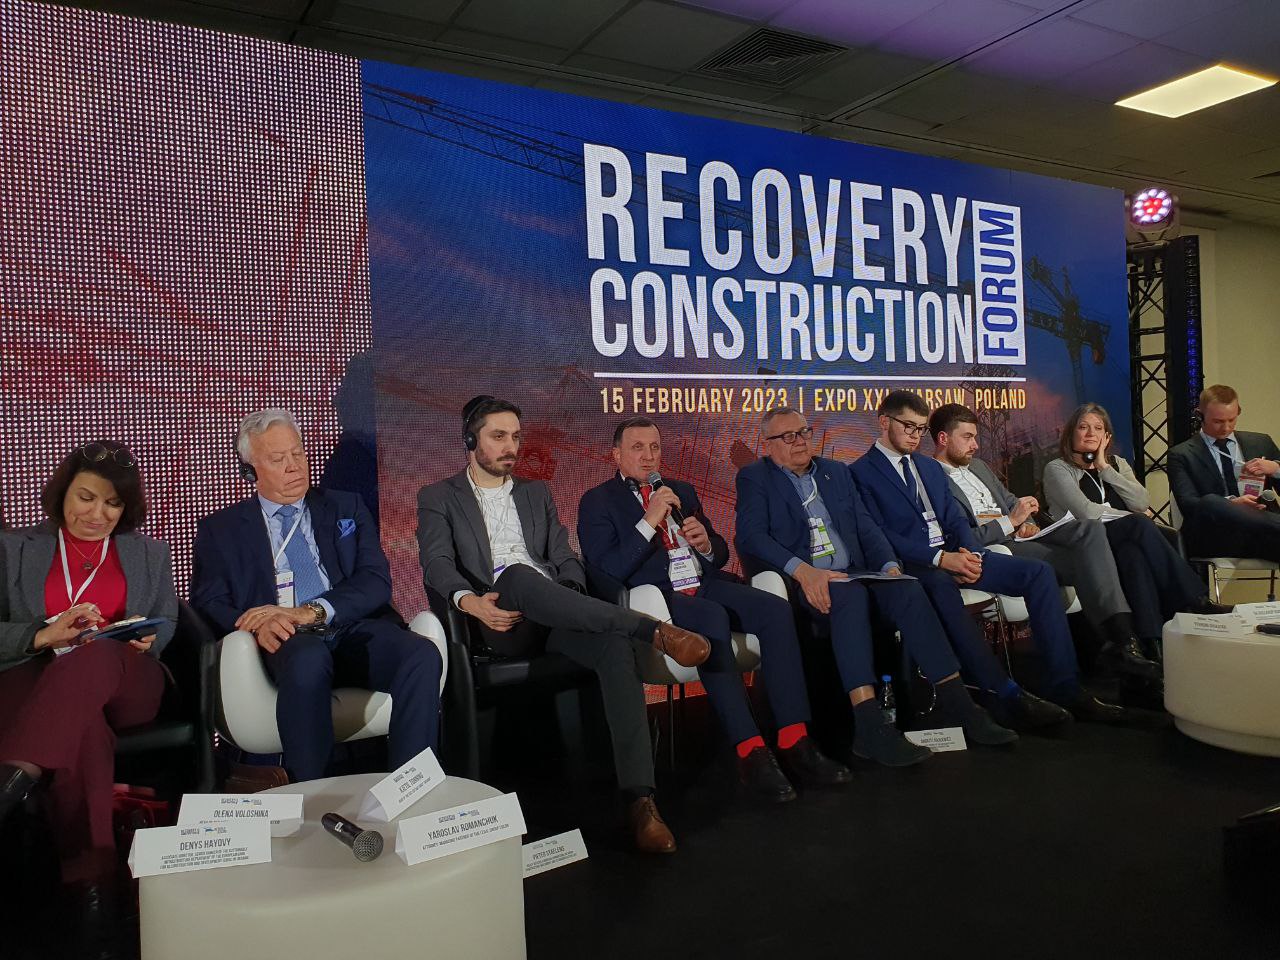 Конструктивная сила: EUCON стал стратегическим партнером Recovery Construction Forum